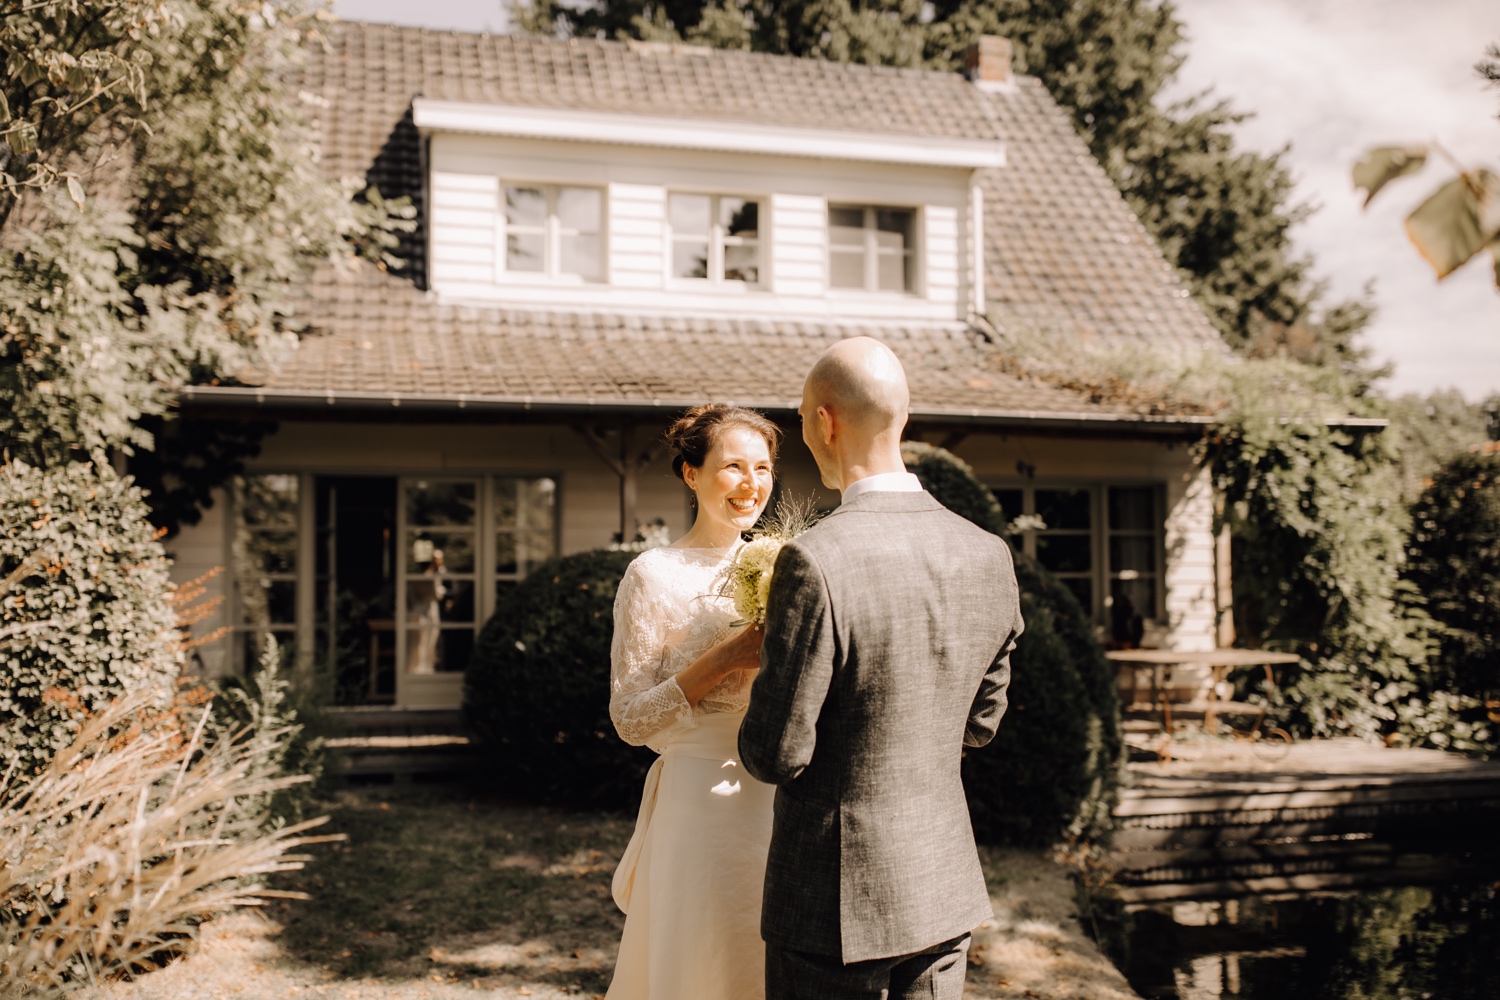 Huwelijksfotograaf Limburg - bruidspaar ziet elkaar voor het eerst